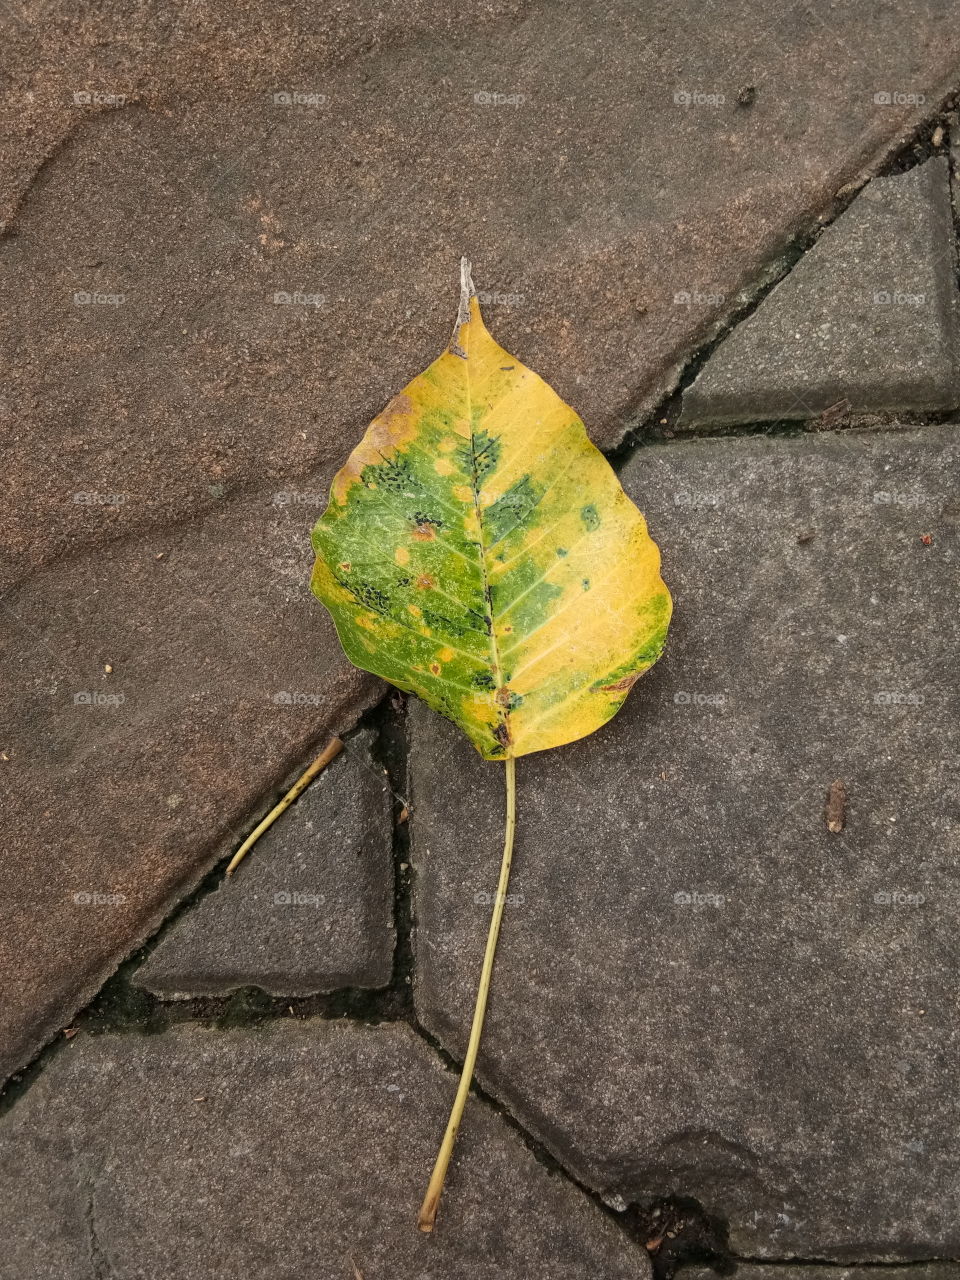 fall
phoo
leaf
ground